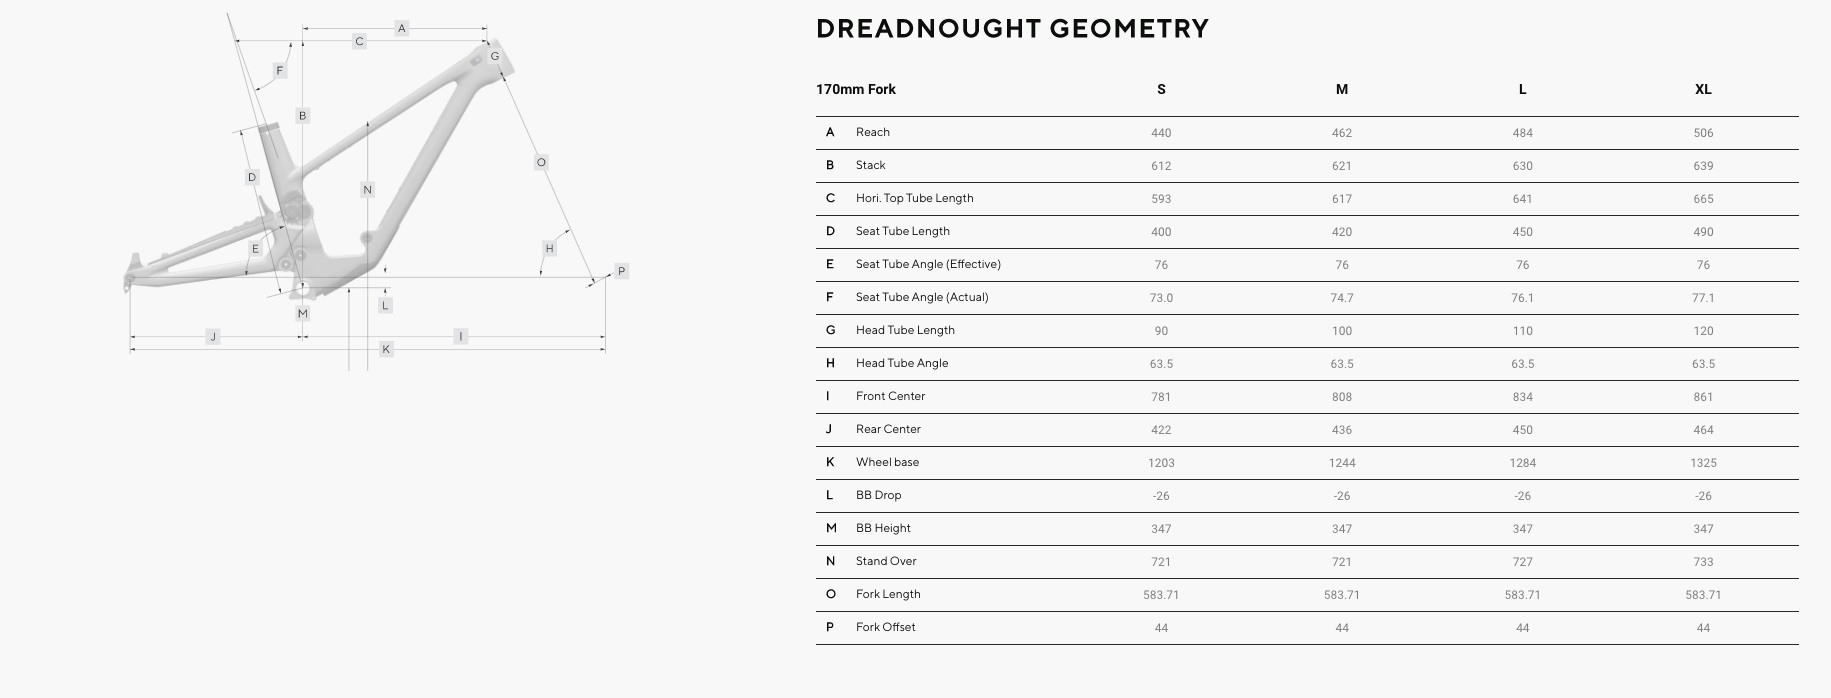 Forbidden Dreadnought geometry